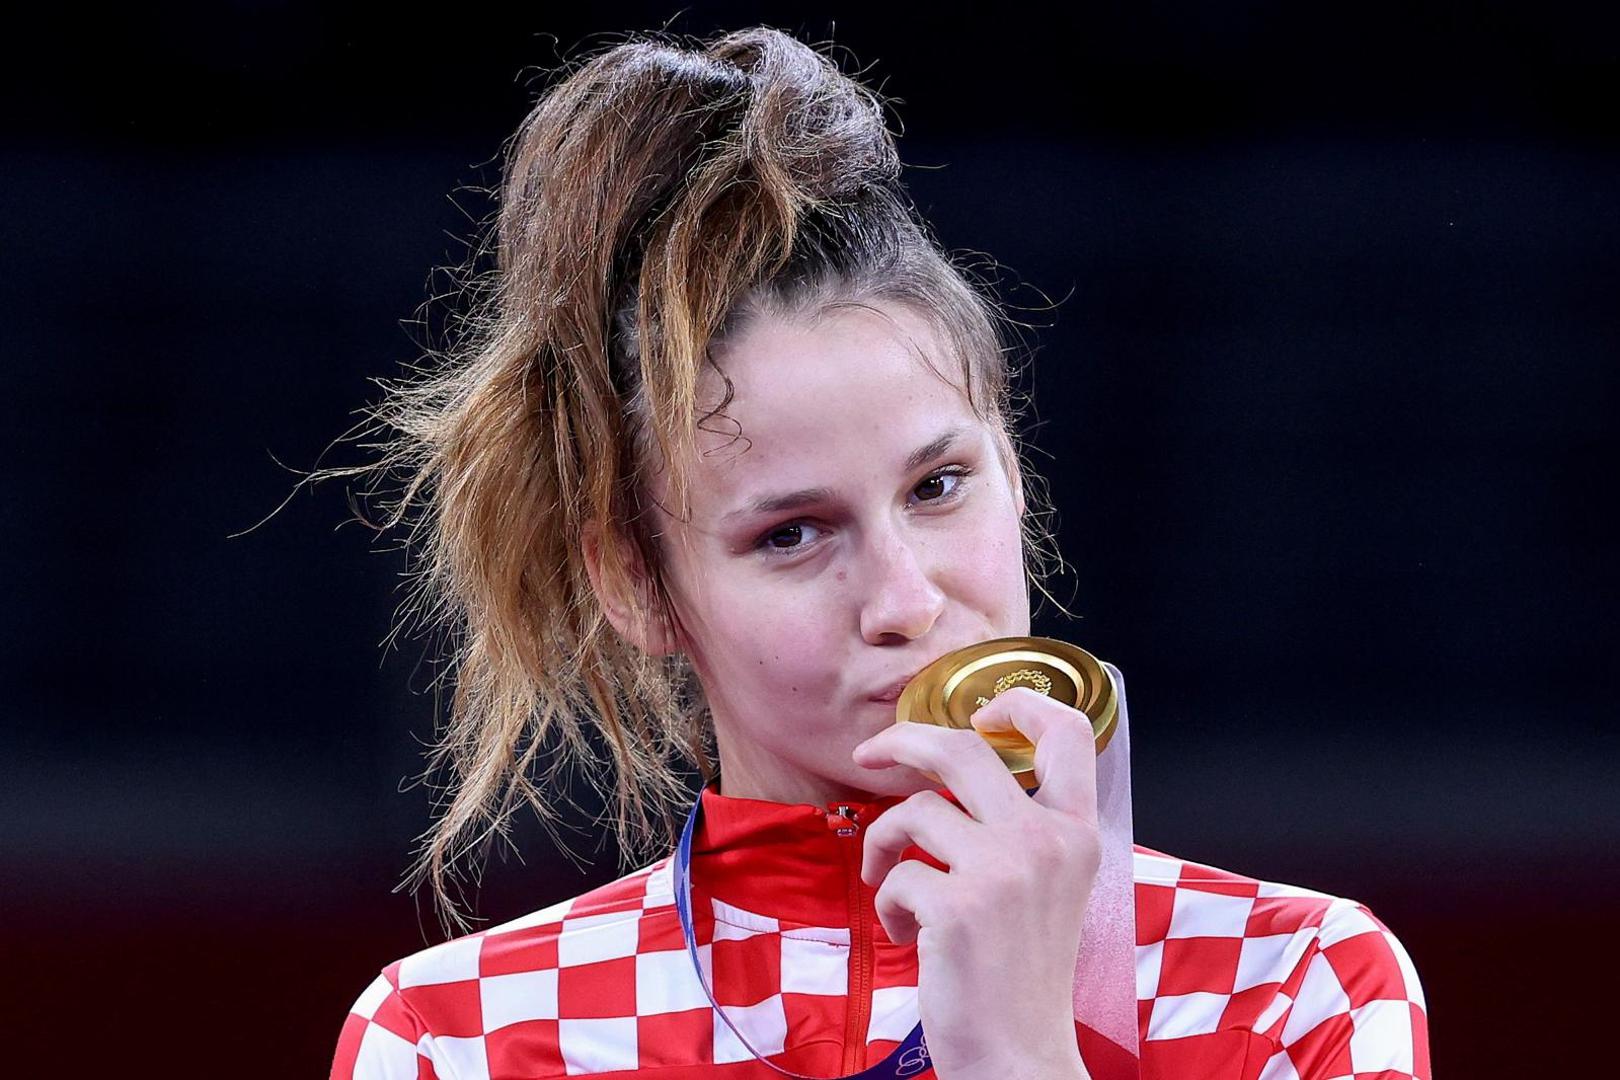 Zlatnu medalju osvojila je Matea Jelić u kategoriji do 67 kilograma.

